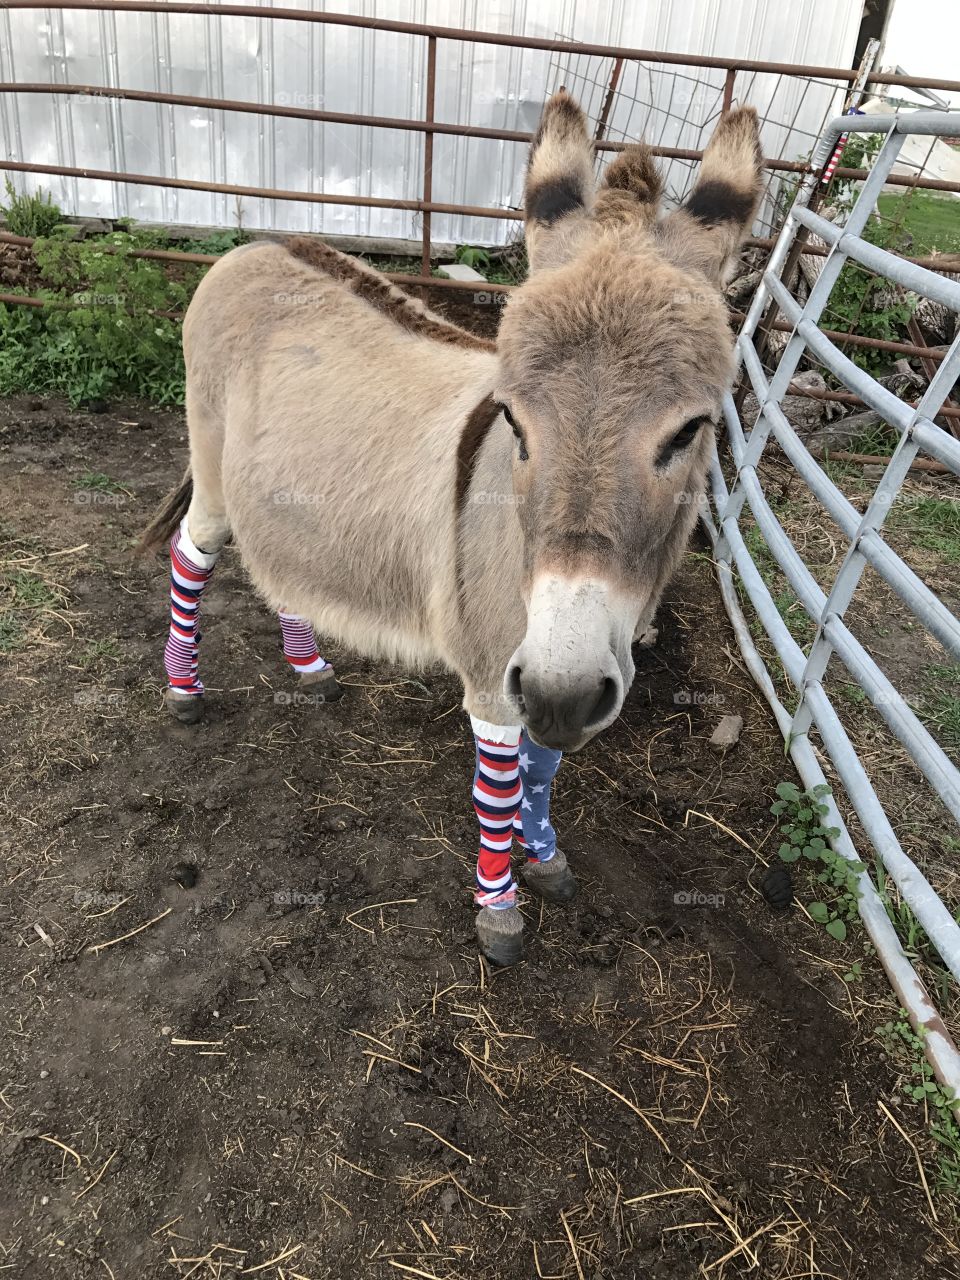 Donkey with socks on!